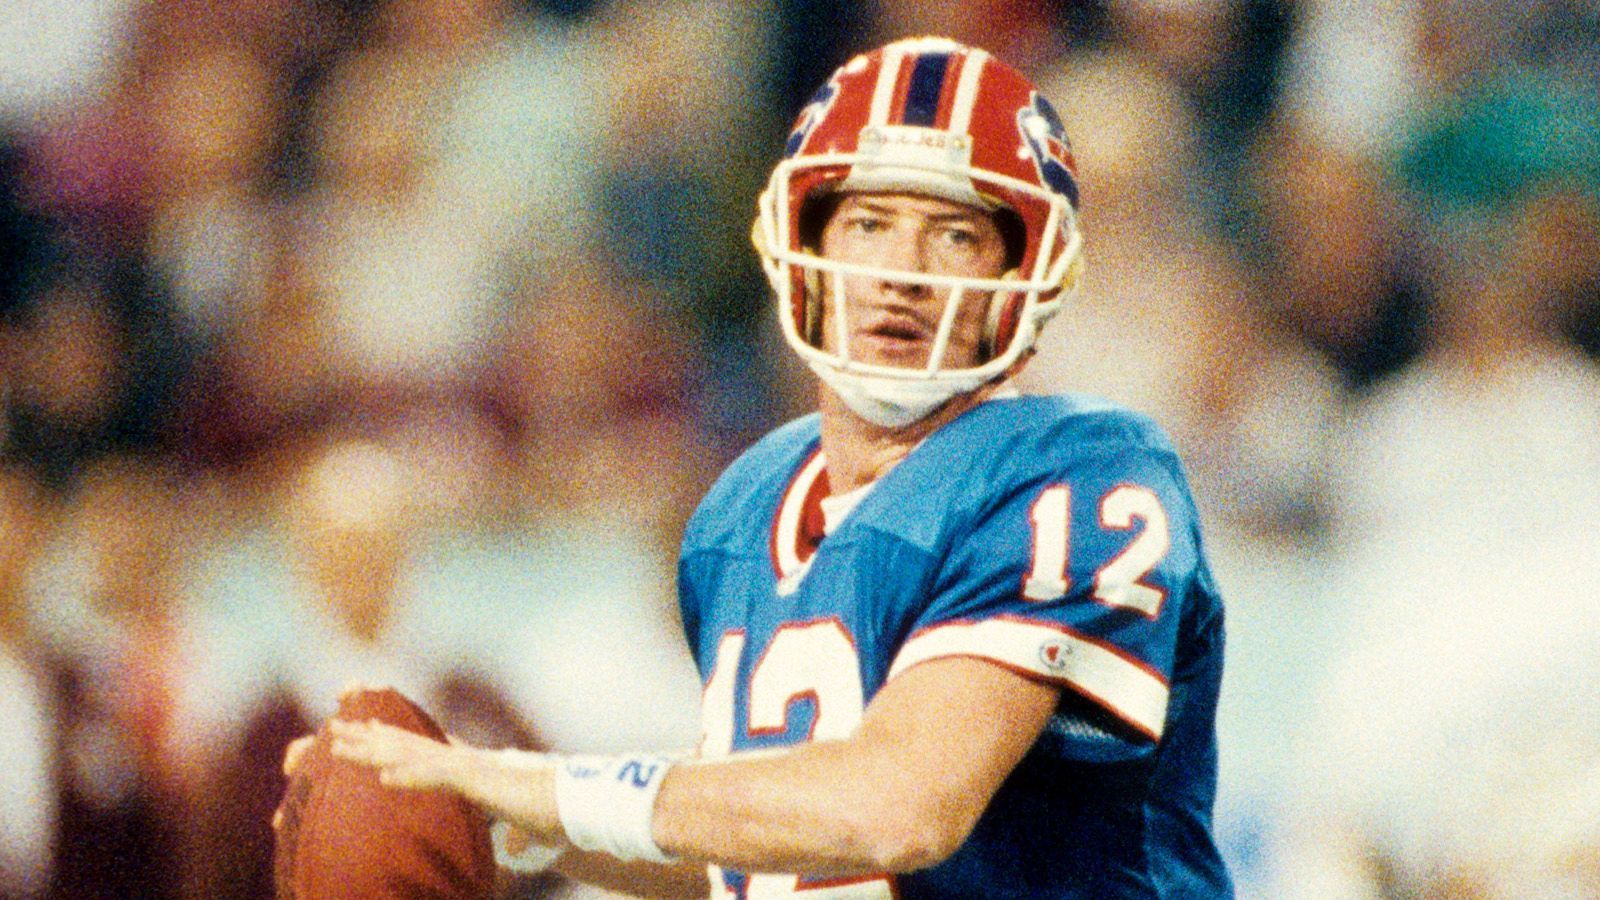 
                <strong>Buffalo Bills: Jim Kelly (Quarterback) </strong><br>
                Kelly führte die Bills in den 1990er Jahren zu vier aufeinanderfolgenden Super-Bowl-Auftritten und war ein prägender Spieler für die Franchise.
              